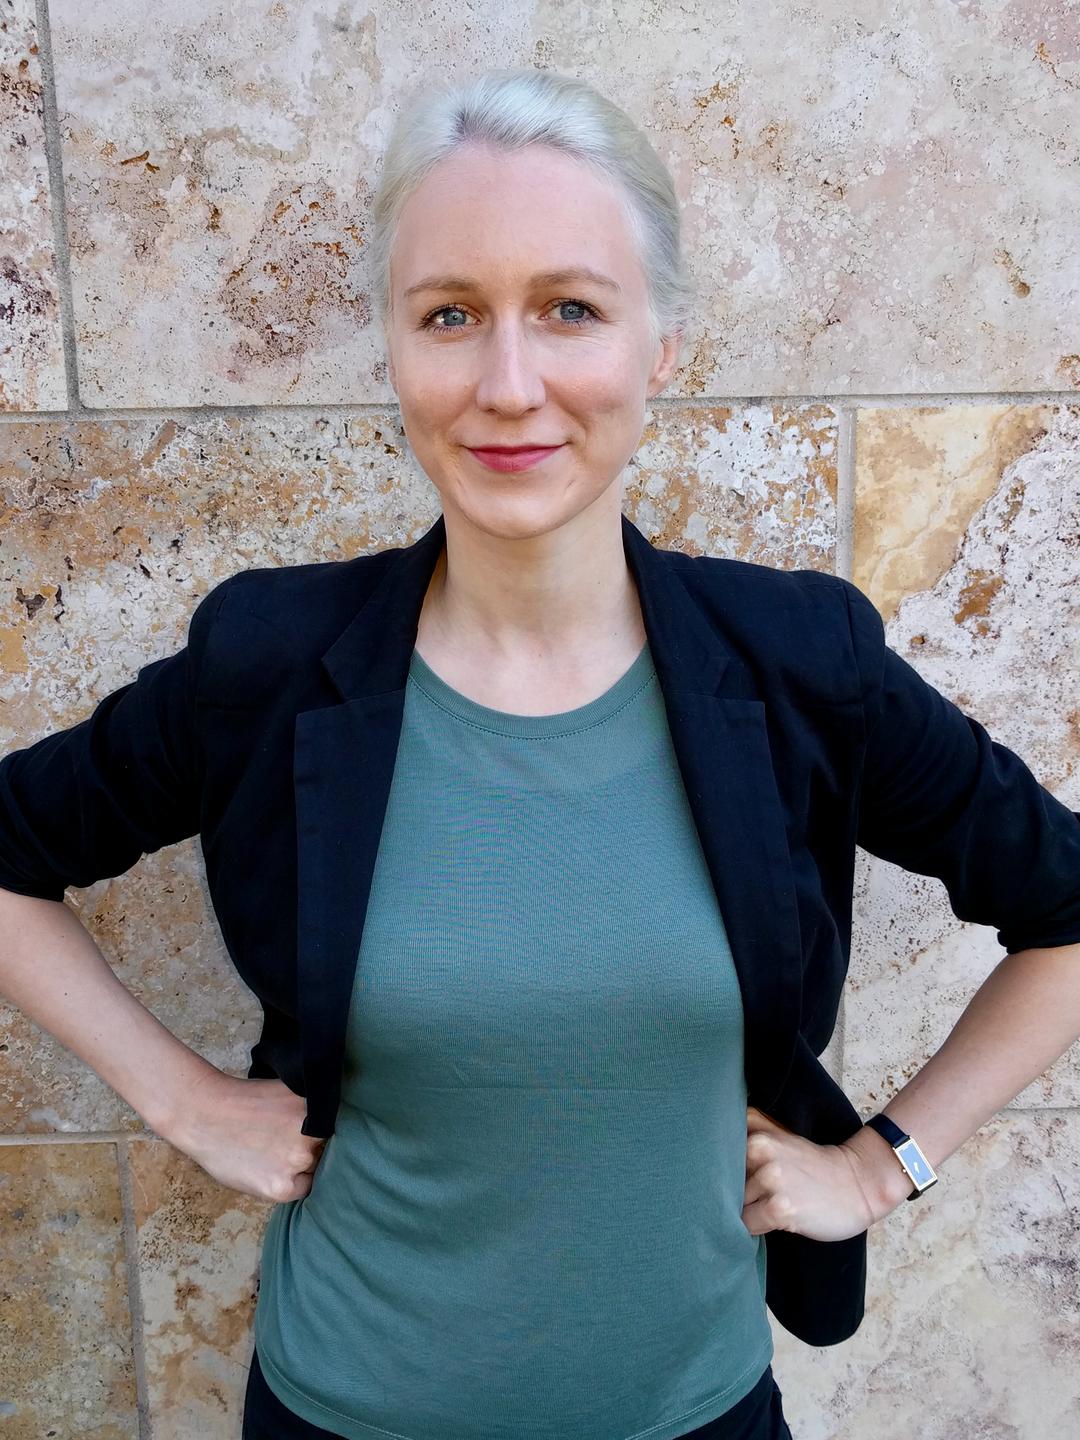 Kristina Lepold, mit zurückgekämmtem blondem Haar, einem schwarzen Sakko und grüner Bluse, hat die Hände in die Hüften gestemmt und lehnt an einer Marmorwand.